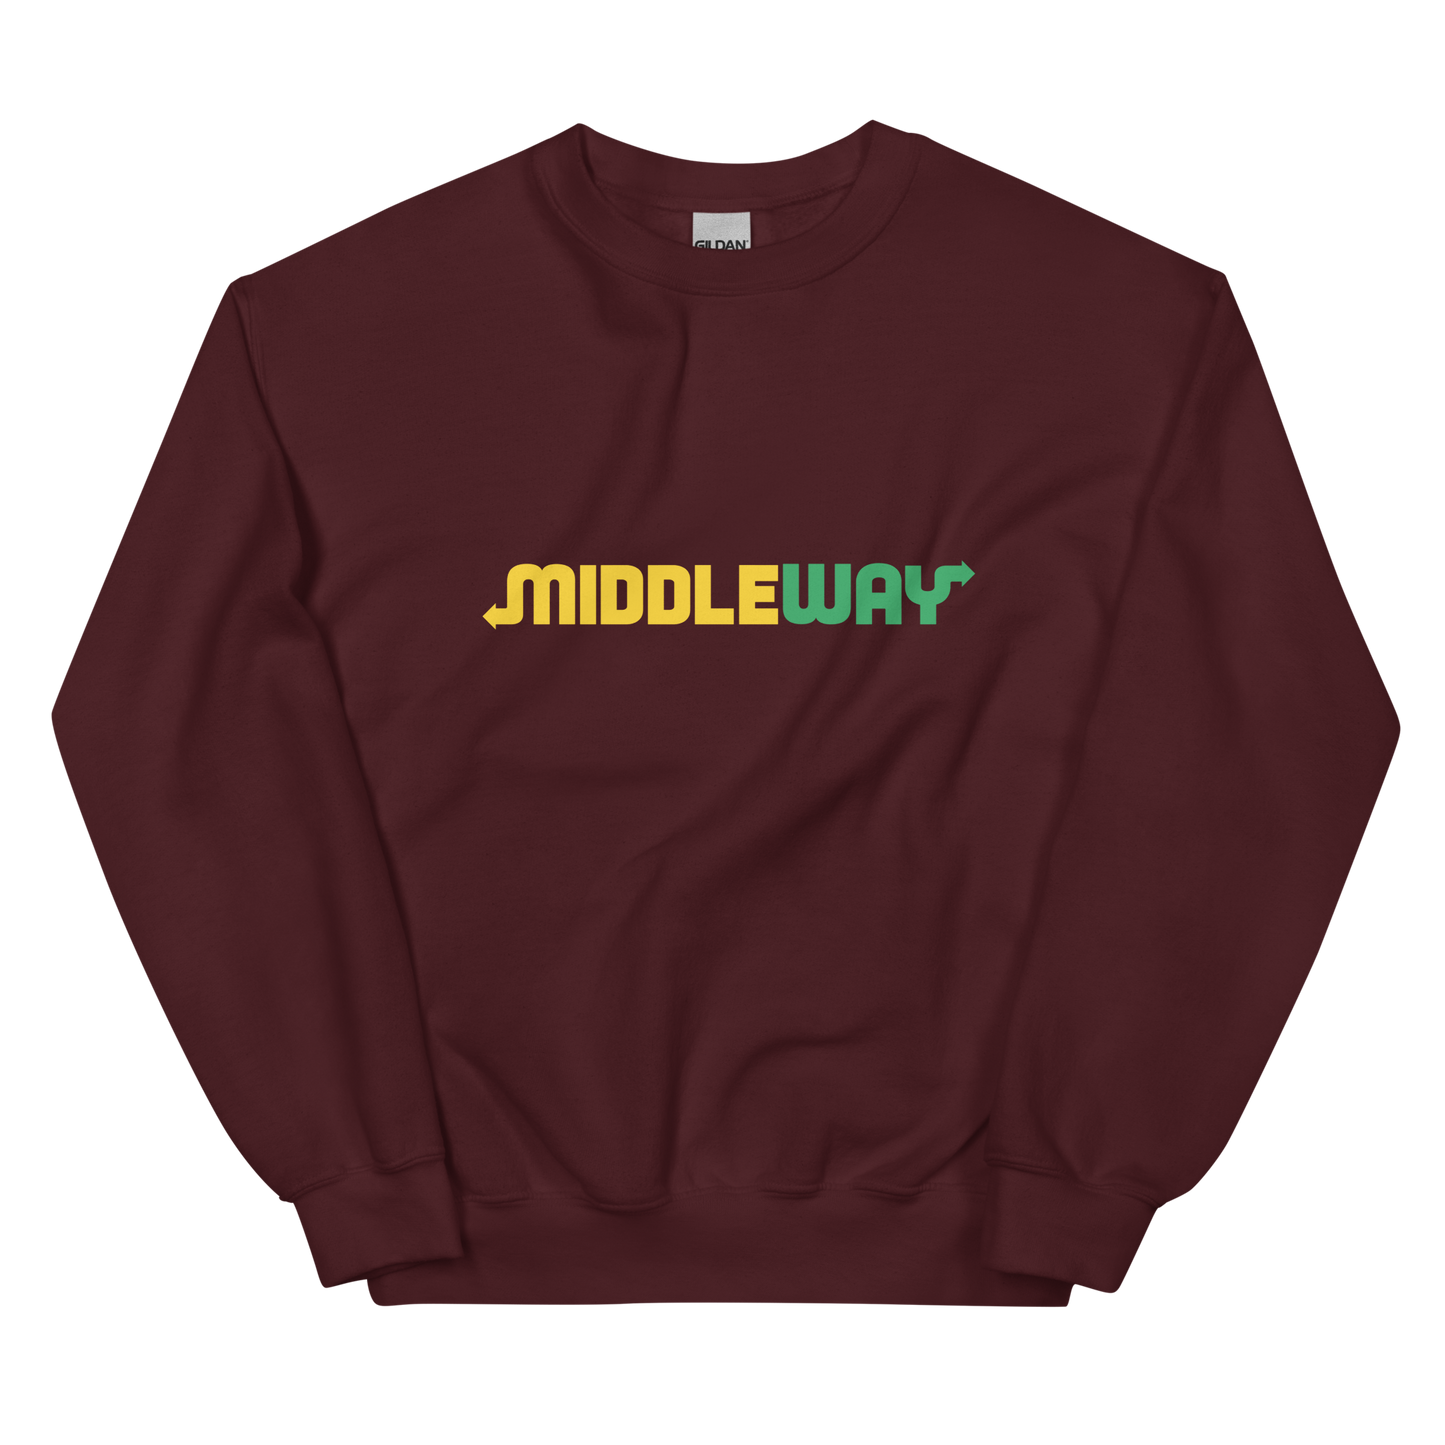 Middle Way Graphic  Sweatshirt